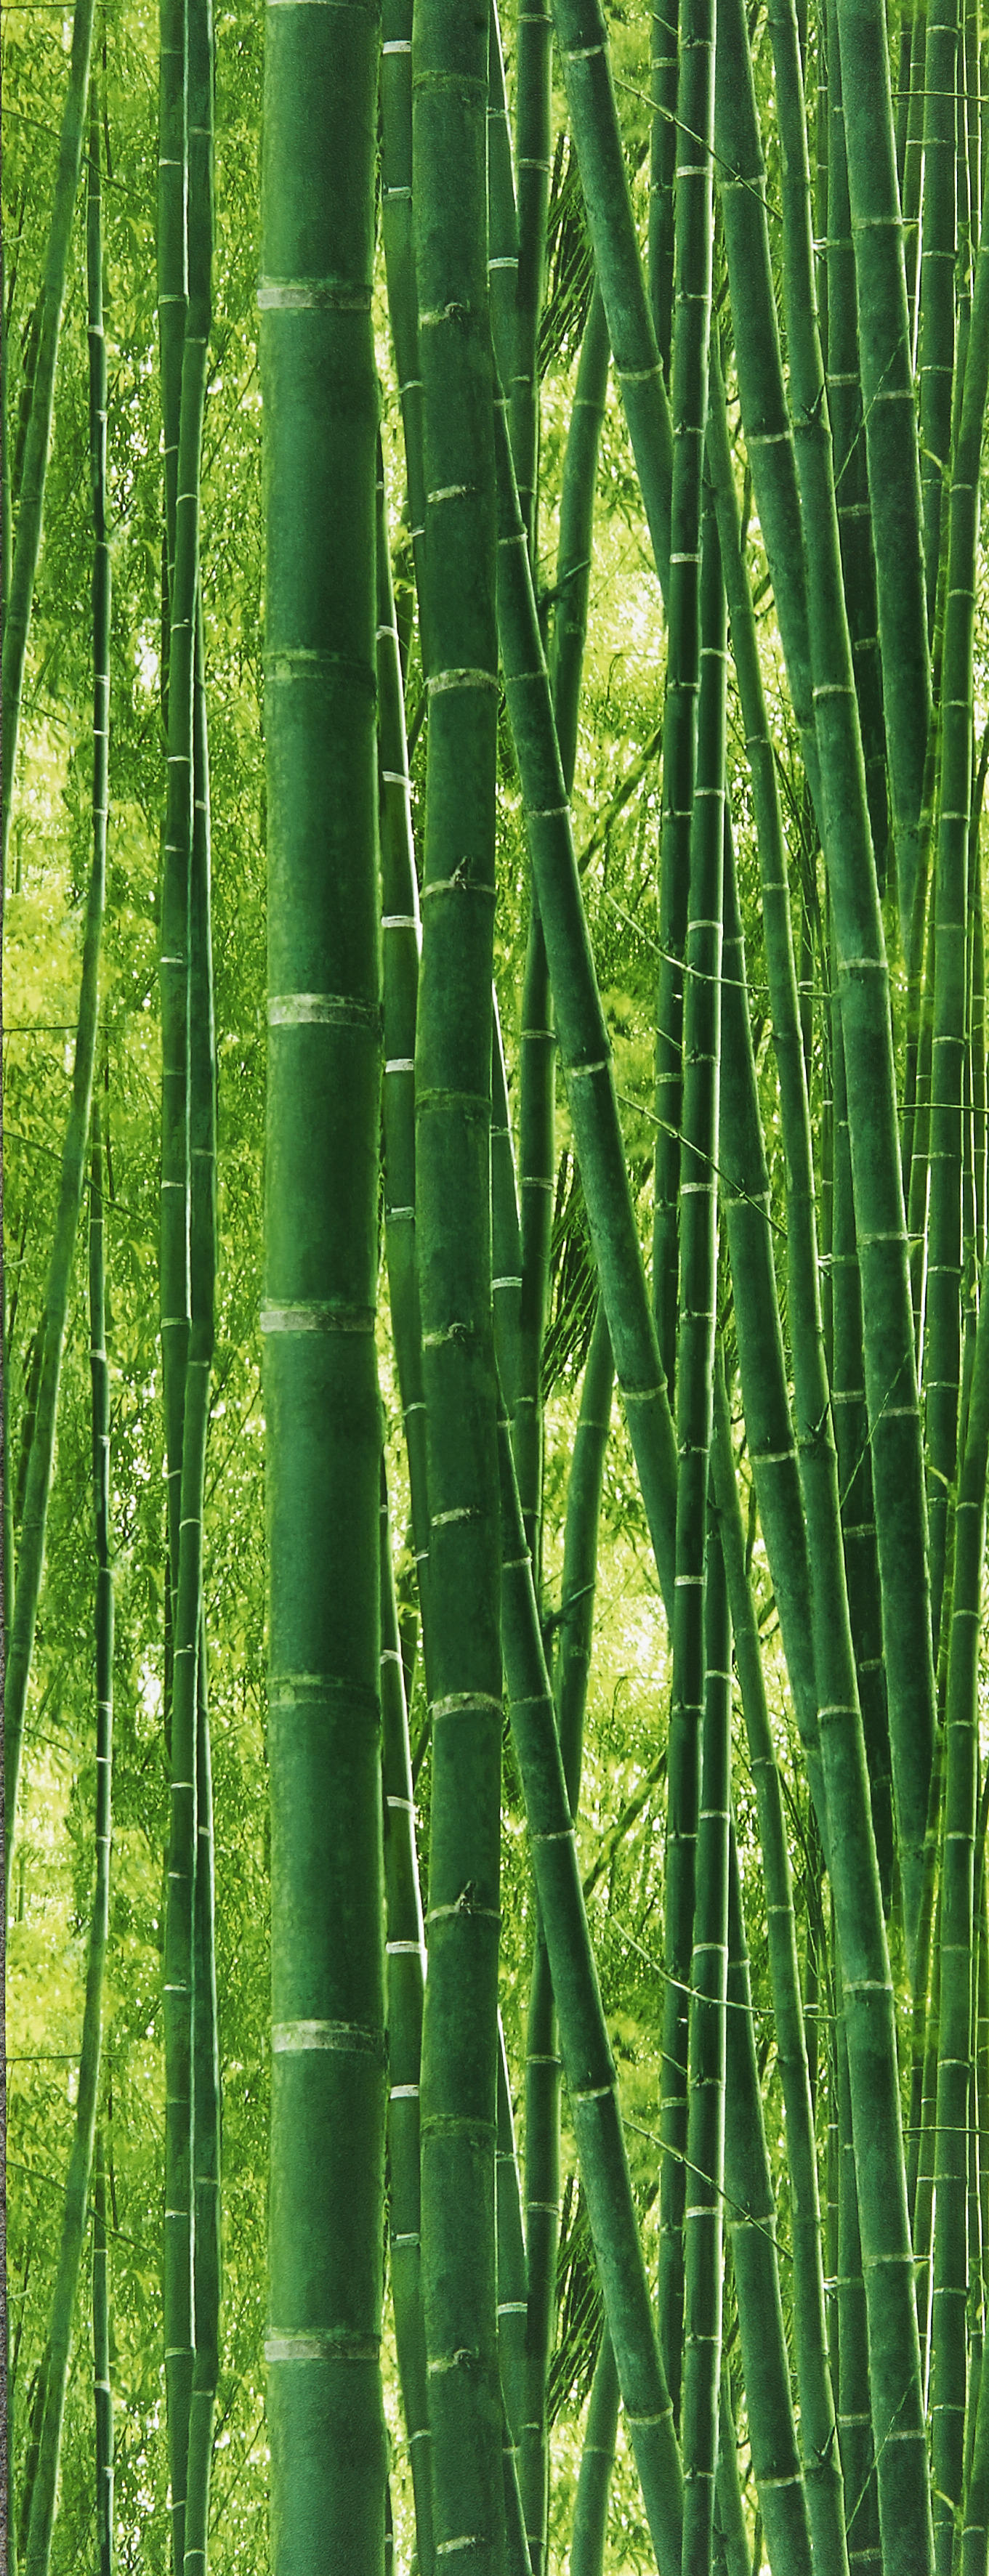 Papiertapete Bambus grün B/L: ca. 53x1005 cm Papiertapete_9387-18 - grün (53,00/1005,00cm)